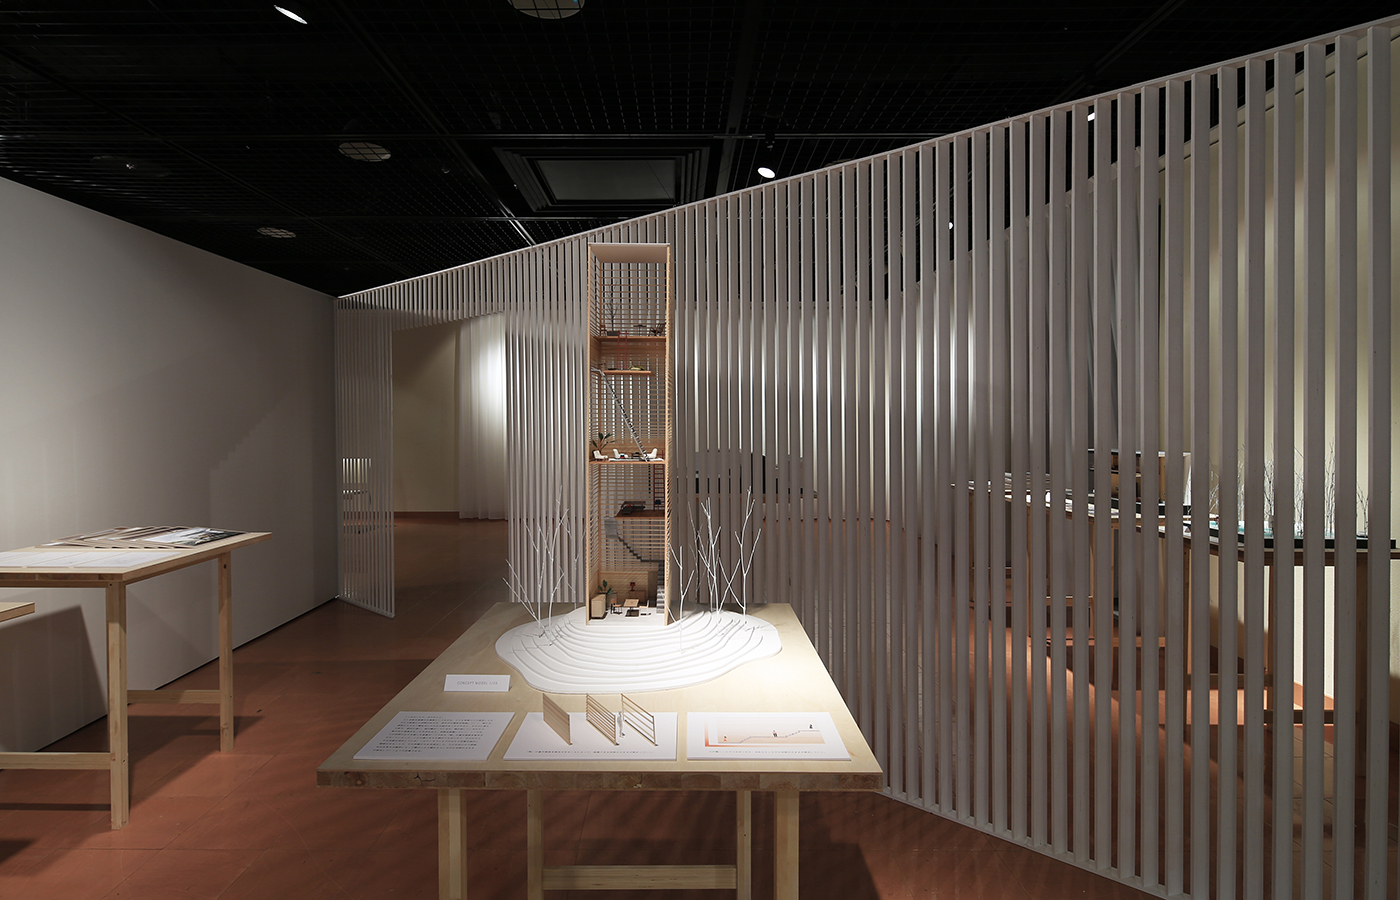 Under 35 Architects exhibition 2014